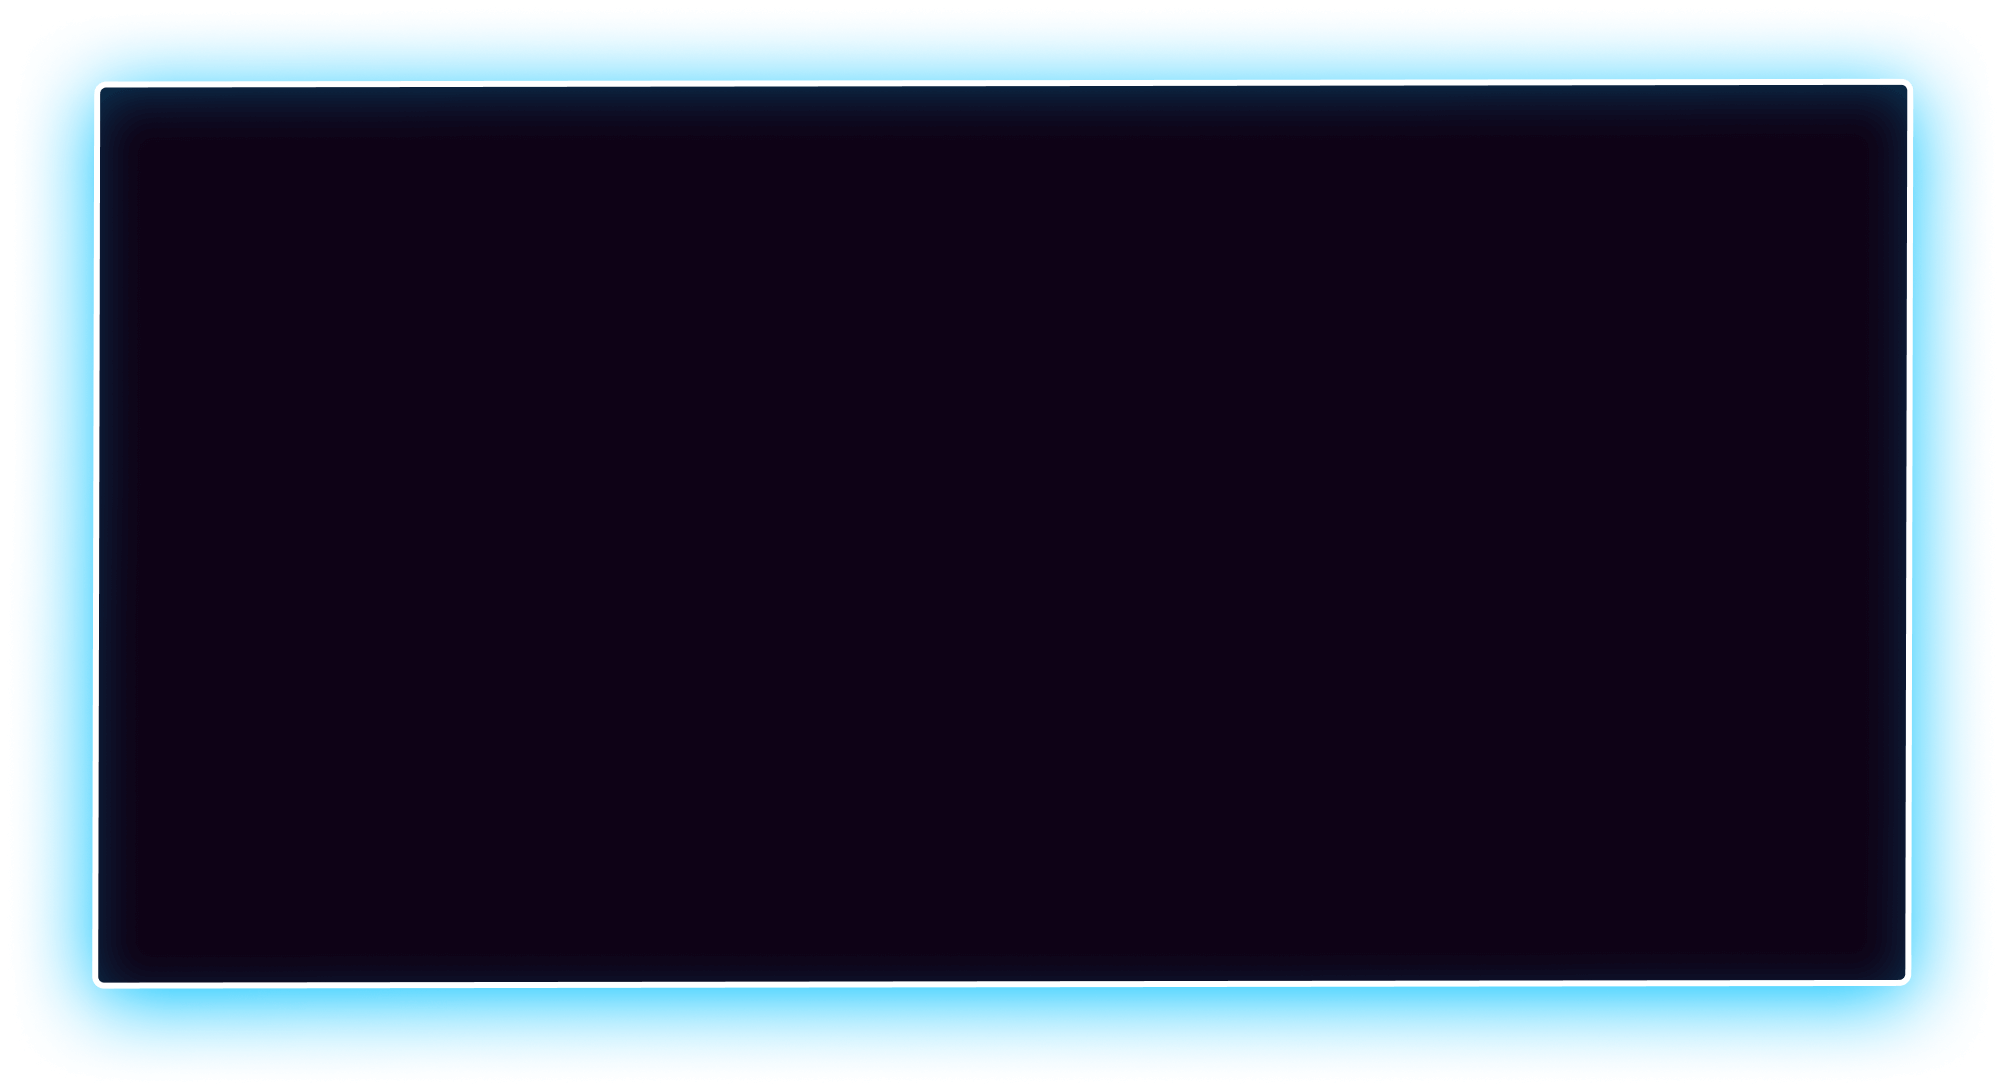 черный прямоугольник, черный четырехугольник, черный фон, прямоугольник с голубой подсветкой